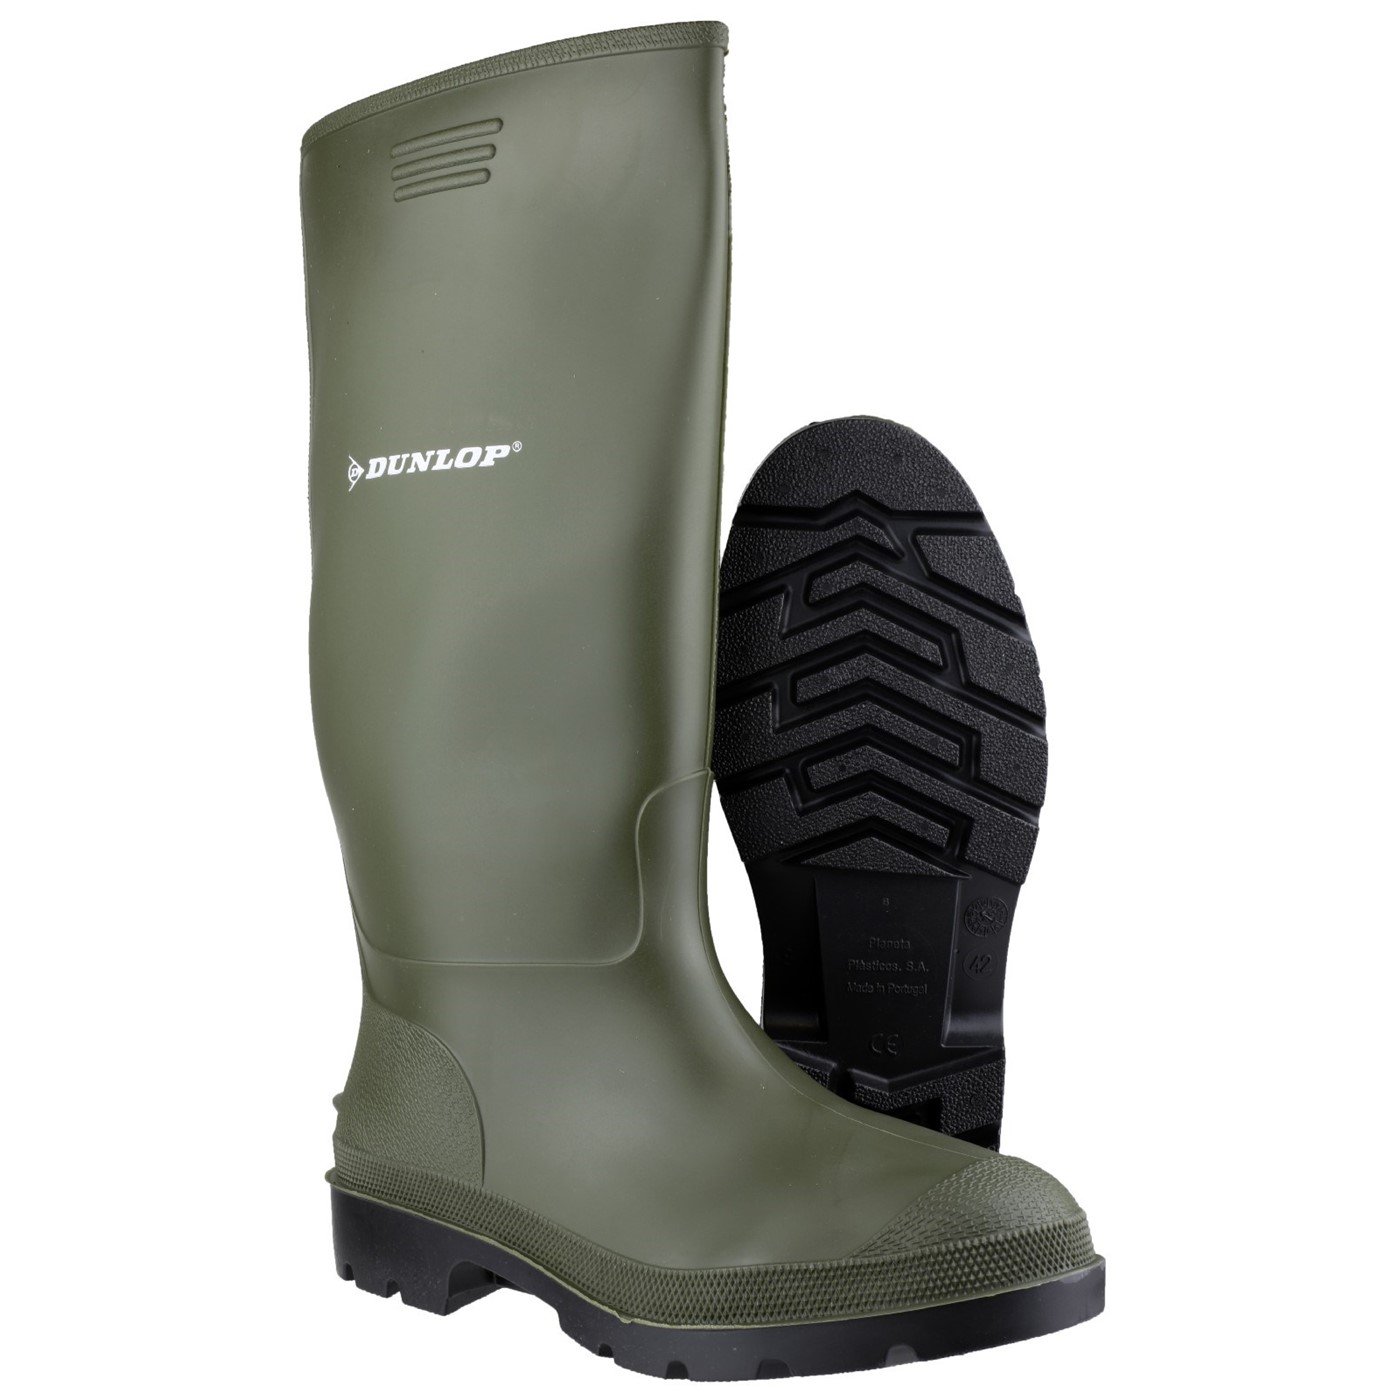 Dunlop Pricemaster Boot, Green, Size 13(48)